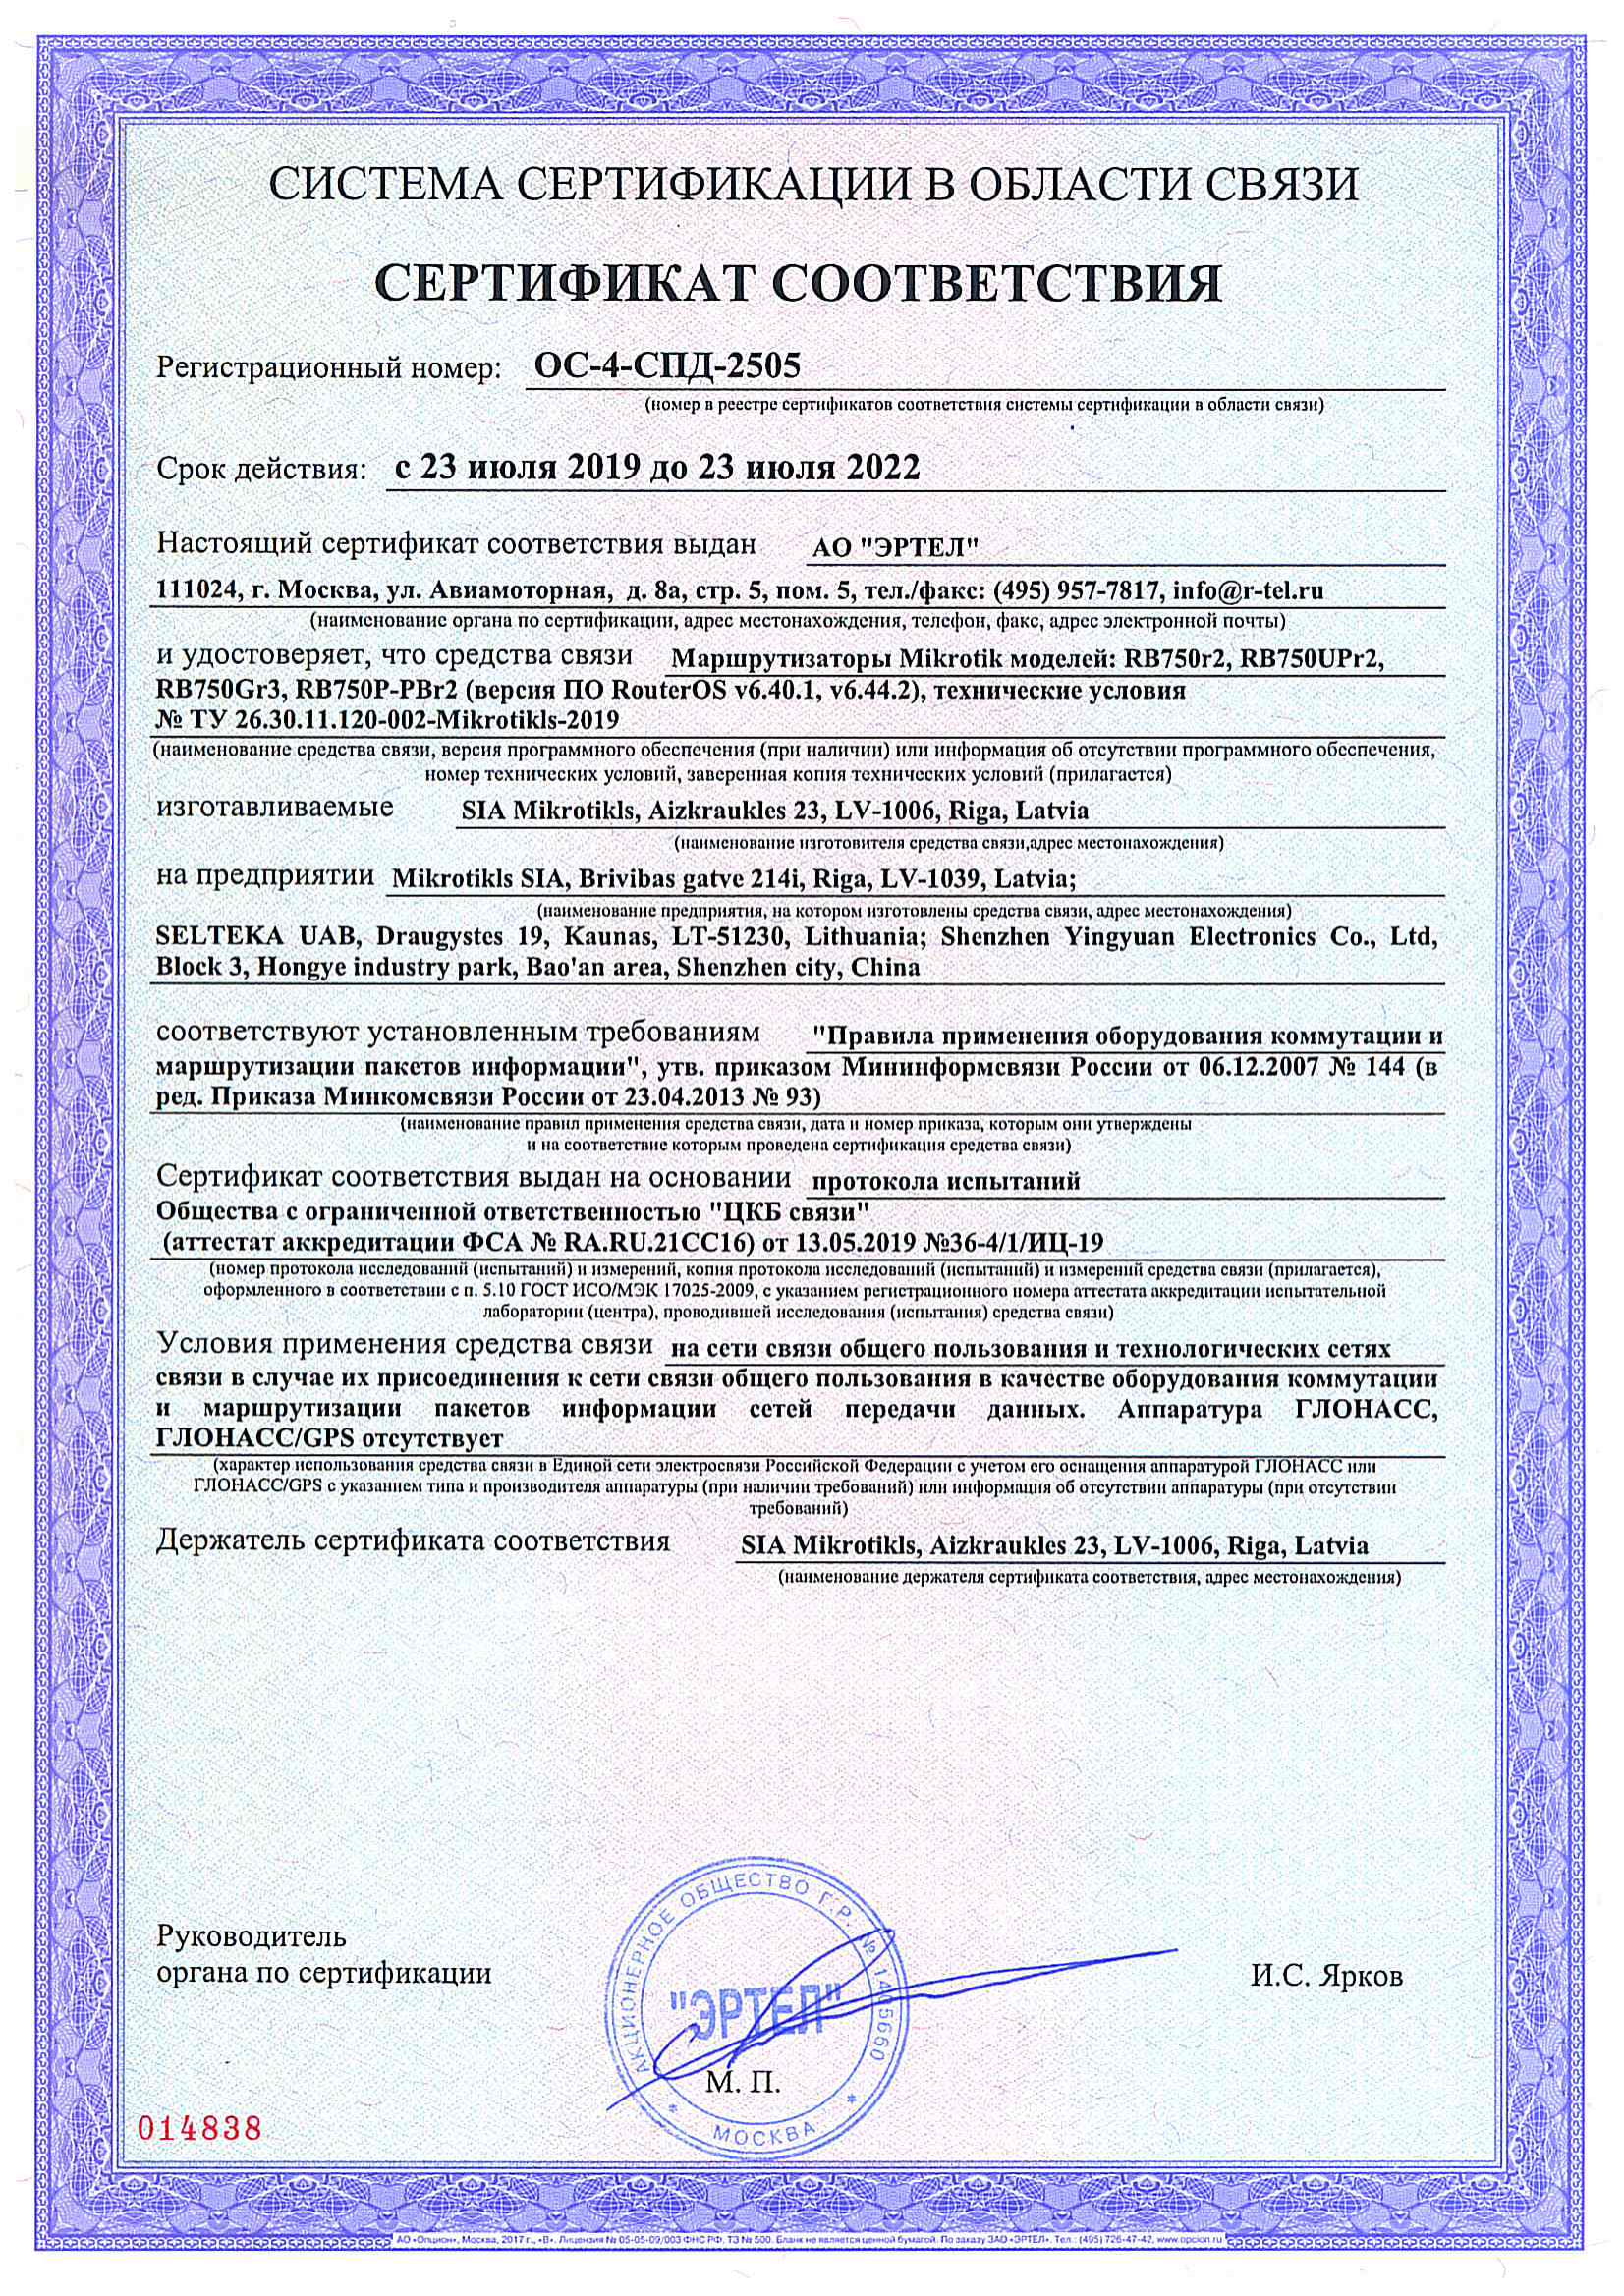 Сертификат соответствия в области связи ОС-4-СПД-2505